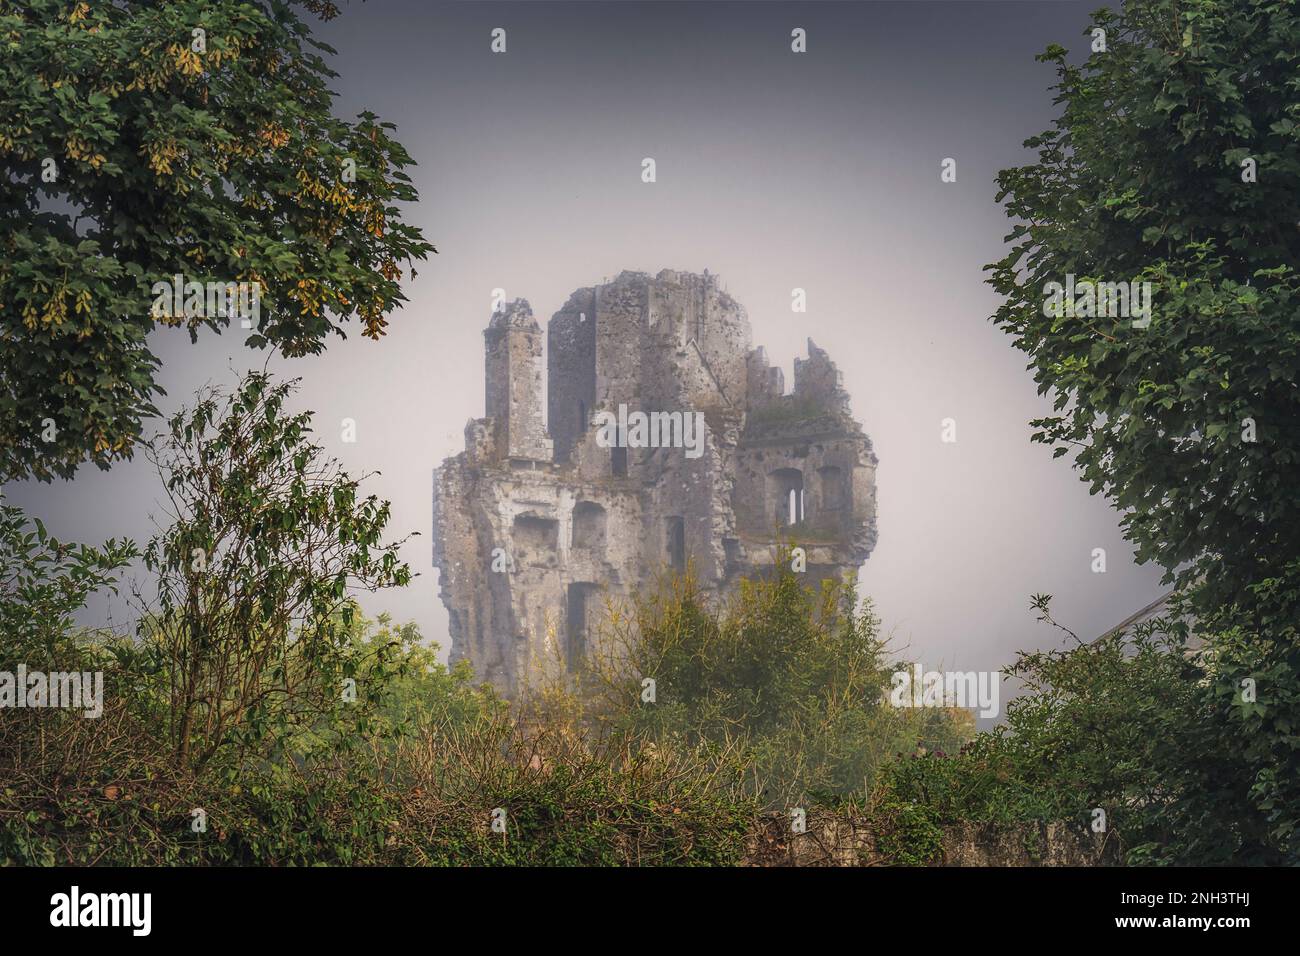 Rovine del castello di Desmond sul fiume Deel ad Askeaton, co Limerick, Irlanda Foto Stock